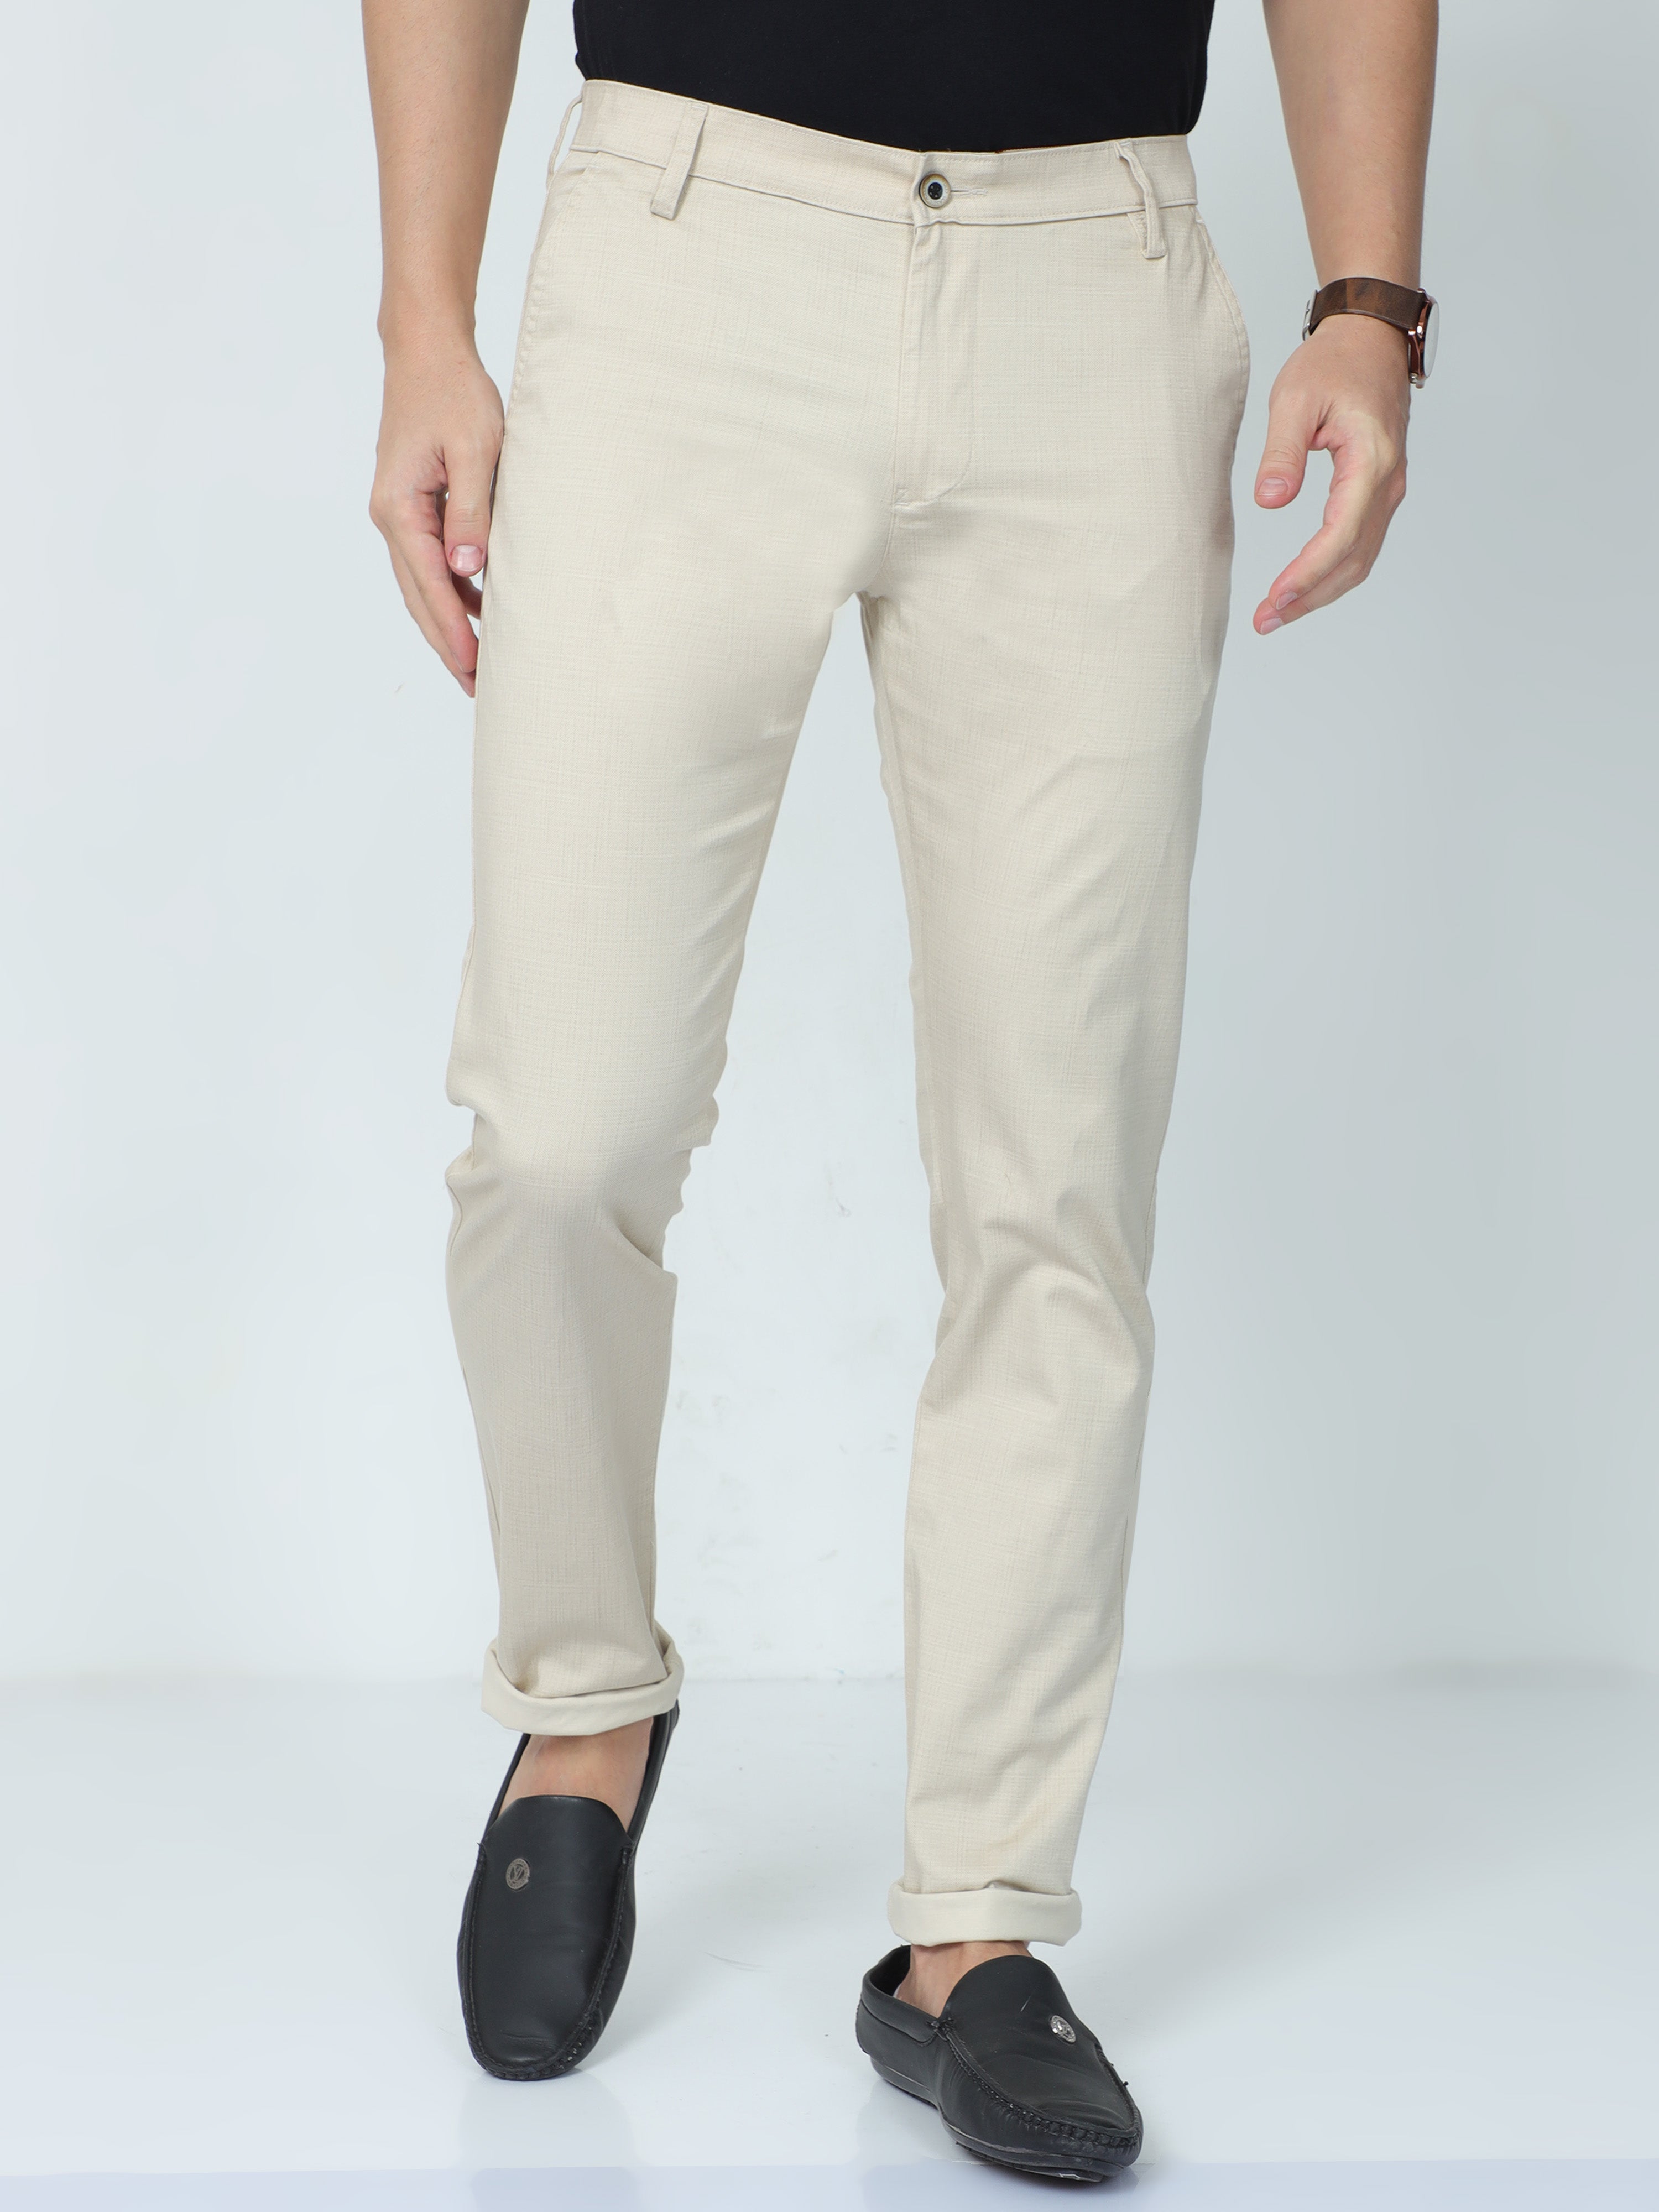 Buy Designer Cream Color Net Fabric Trouser Suit Online - SALV3522 |  Appelle Fashion